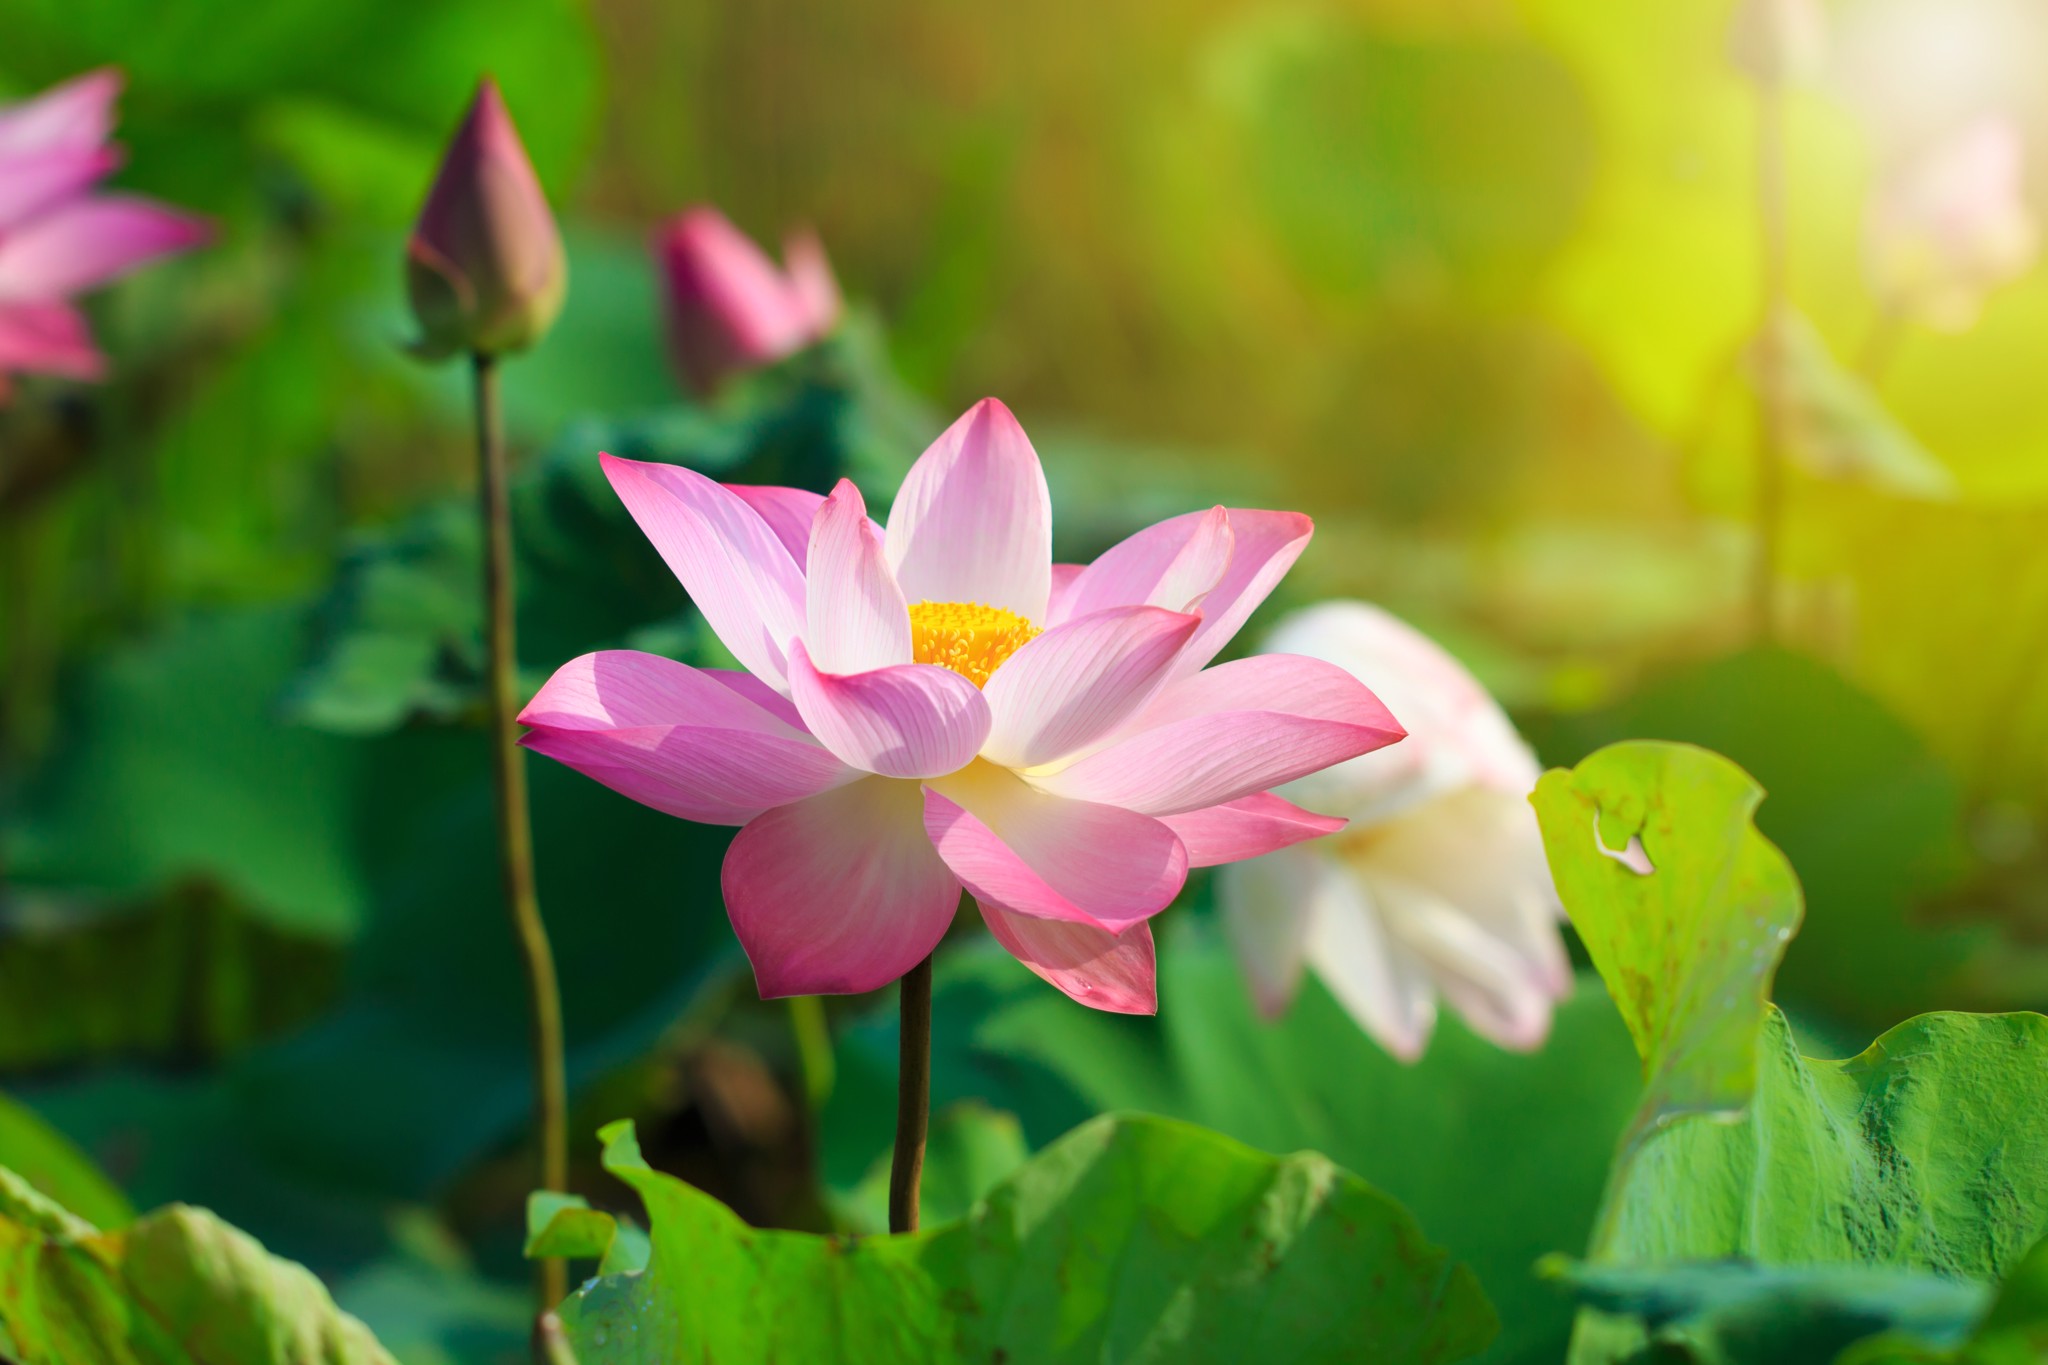 Hoa sen là loại thực vật đầy ý nghĩa và được ví như một loại thuốc quý. Và hãy đón xem những hình ảnh của loài hoa này sẽ để lại cho bạn cảm giác thư thái, thanh bình và yên tĩnh như khi đang đắm chìm trong cánh sen nở.